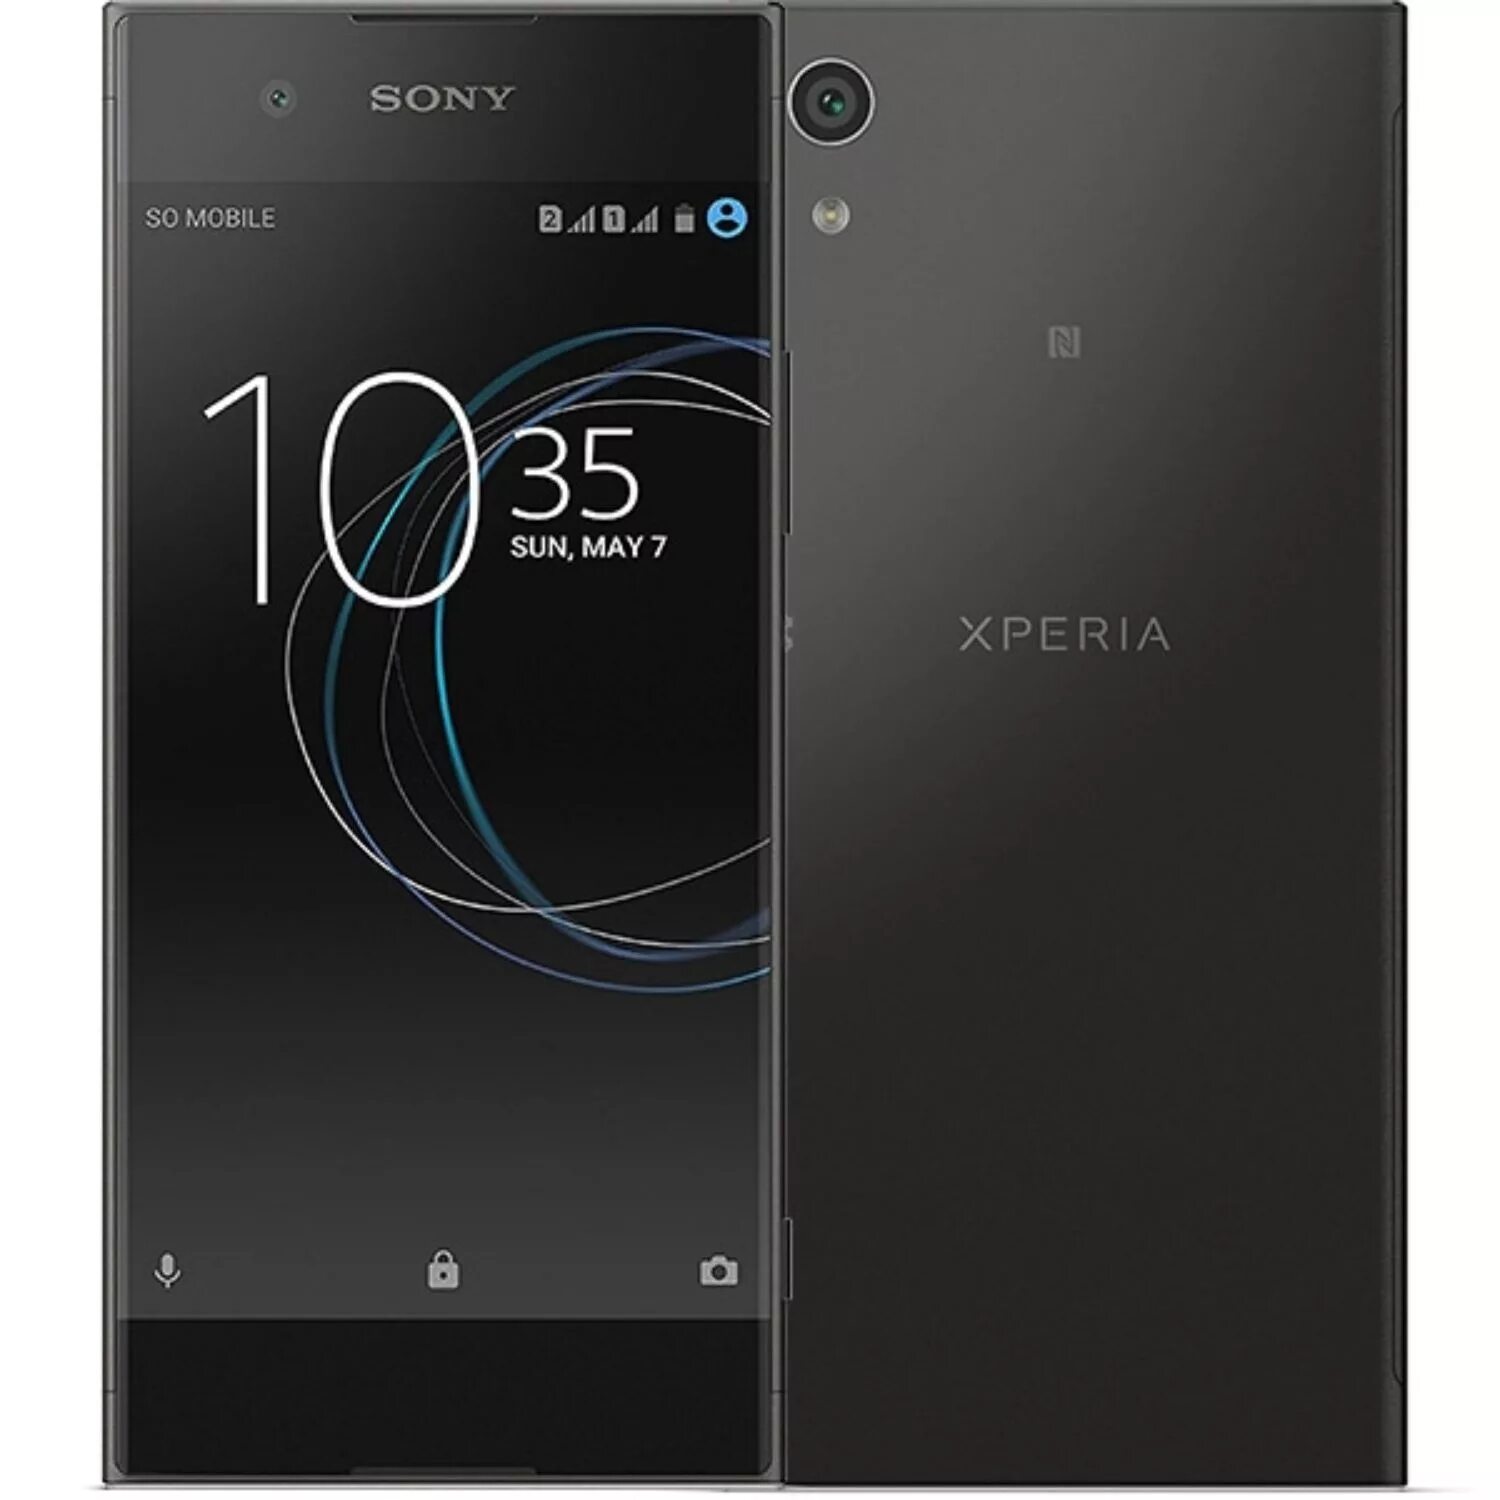 Xperia g3312. Sony Xperia xa1. Sonia Experia xa1. Sony Xperia l1 Dual. Sony Xperia xa1 g3112 Black.